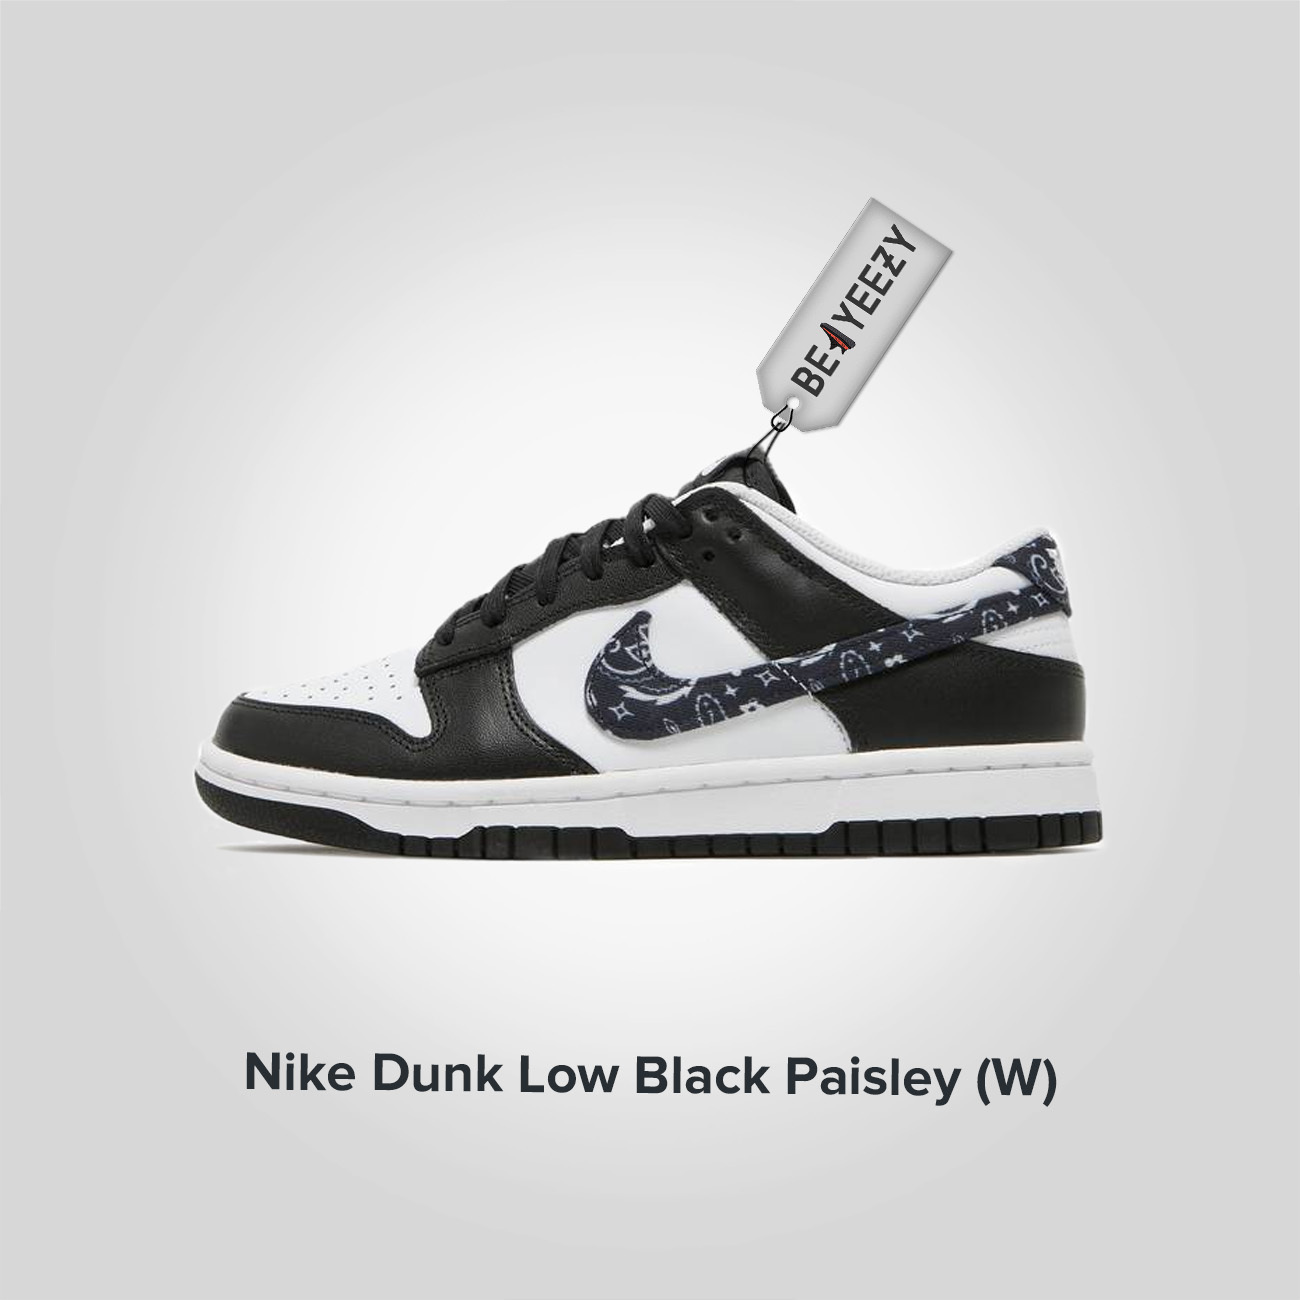 Nike Dunk Low Black Paisley (W)